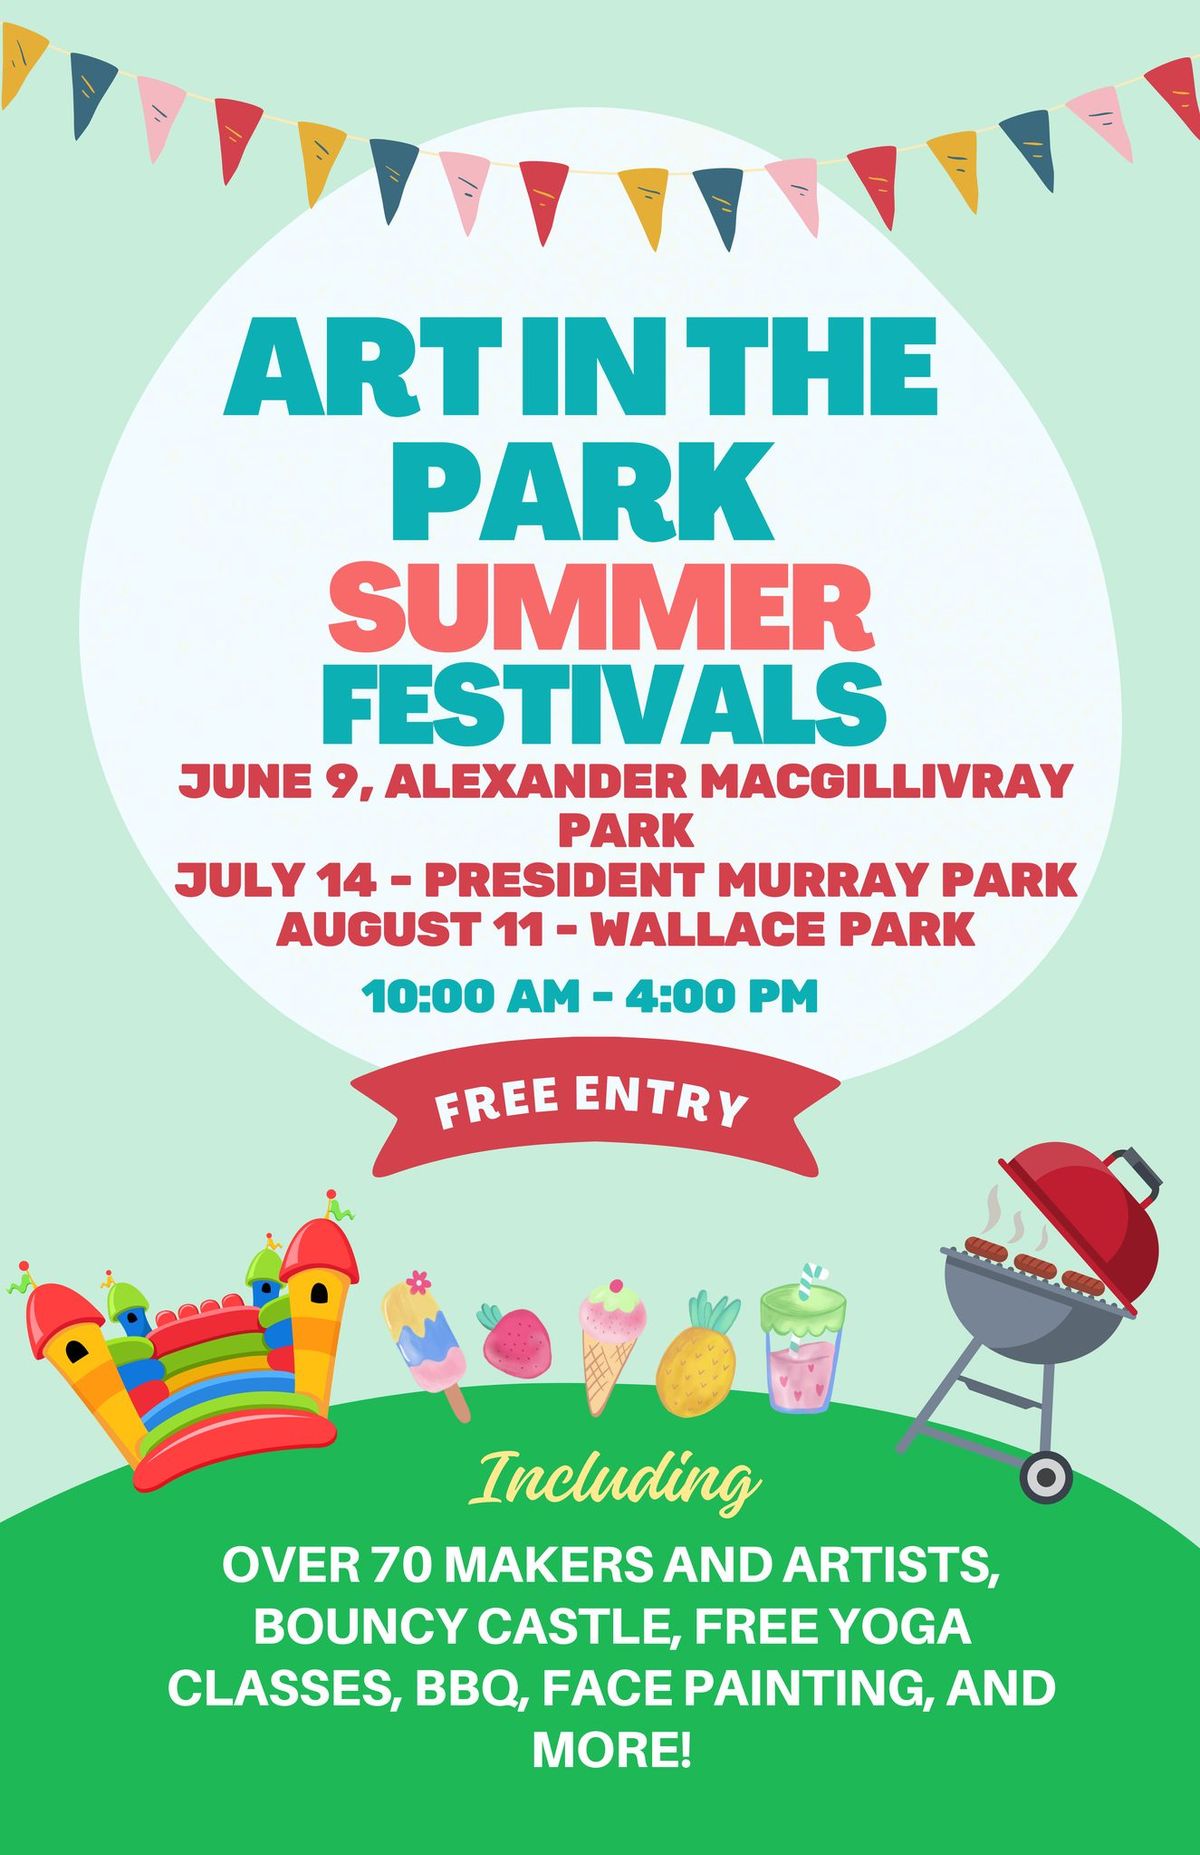 Art in the Park Summer Festivals